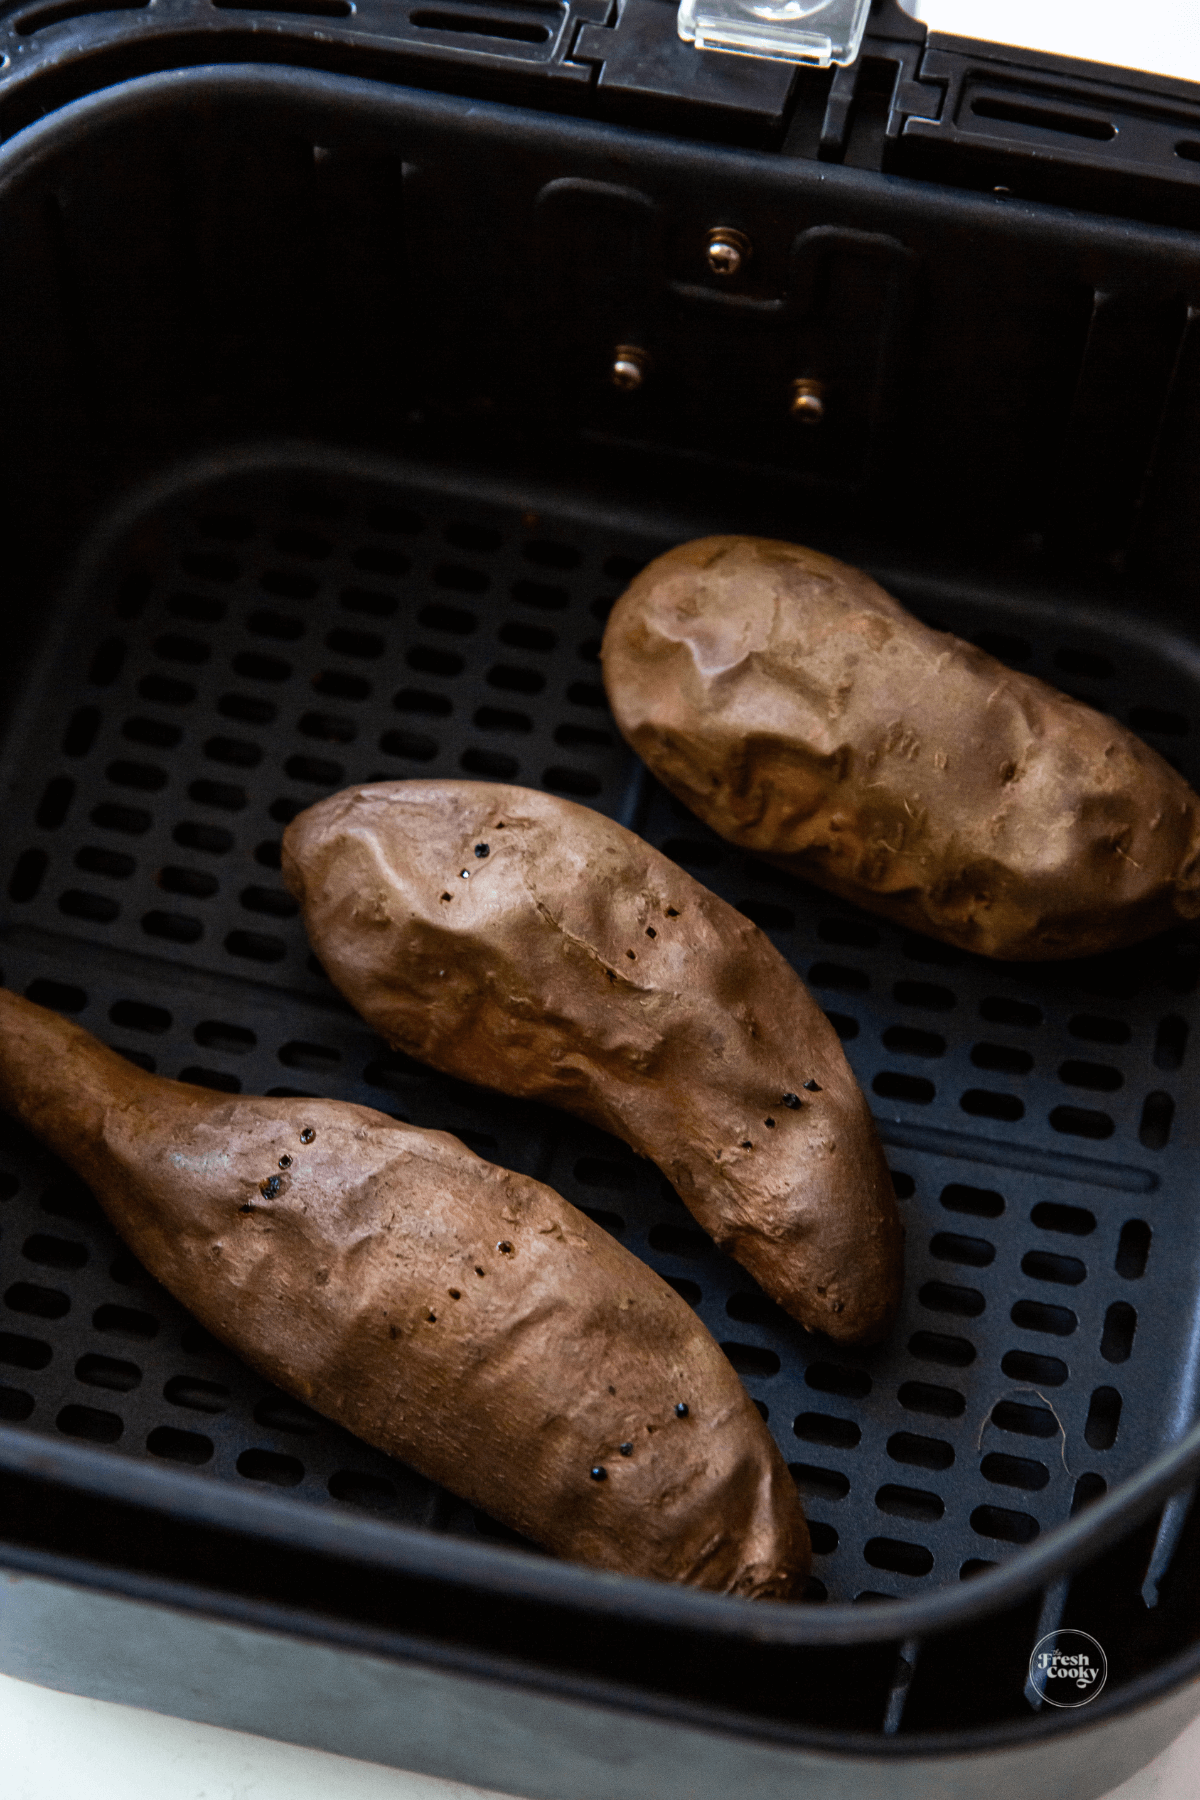 Baked air fryer sweet potatoes in air fryer. 